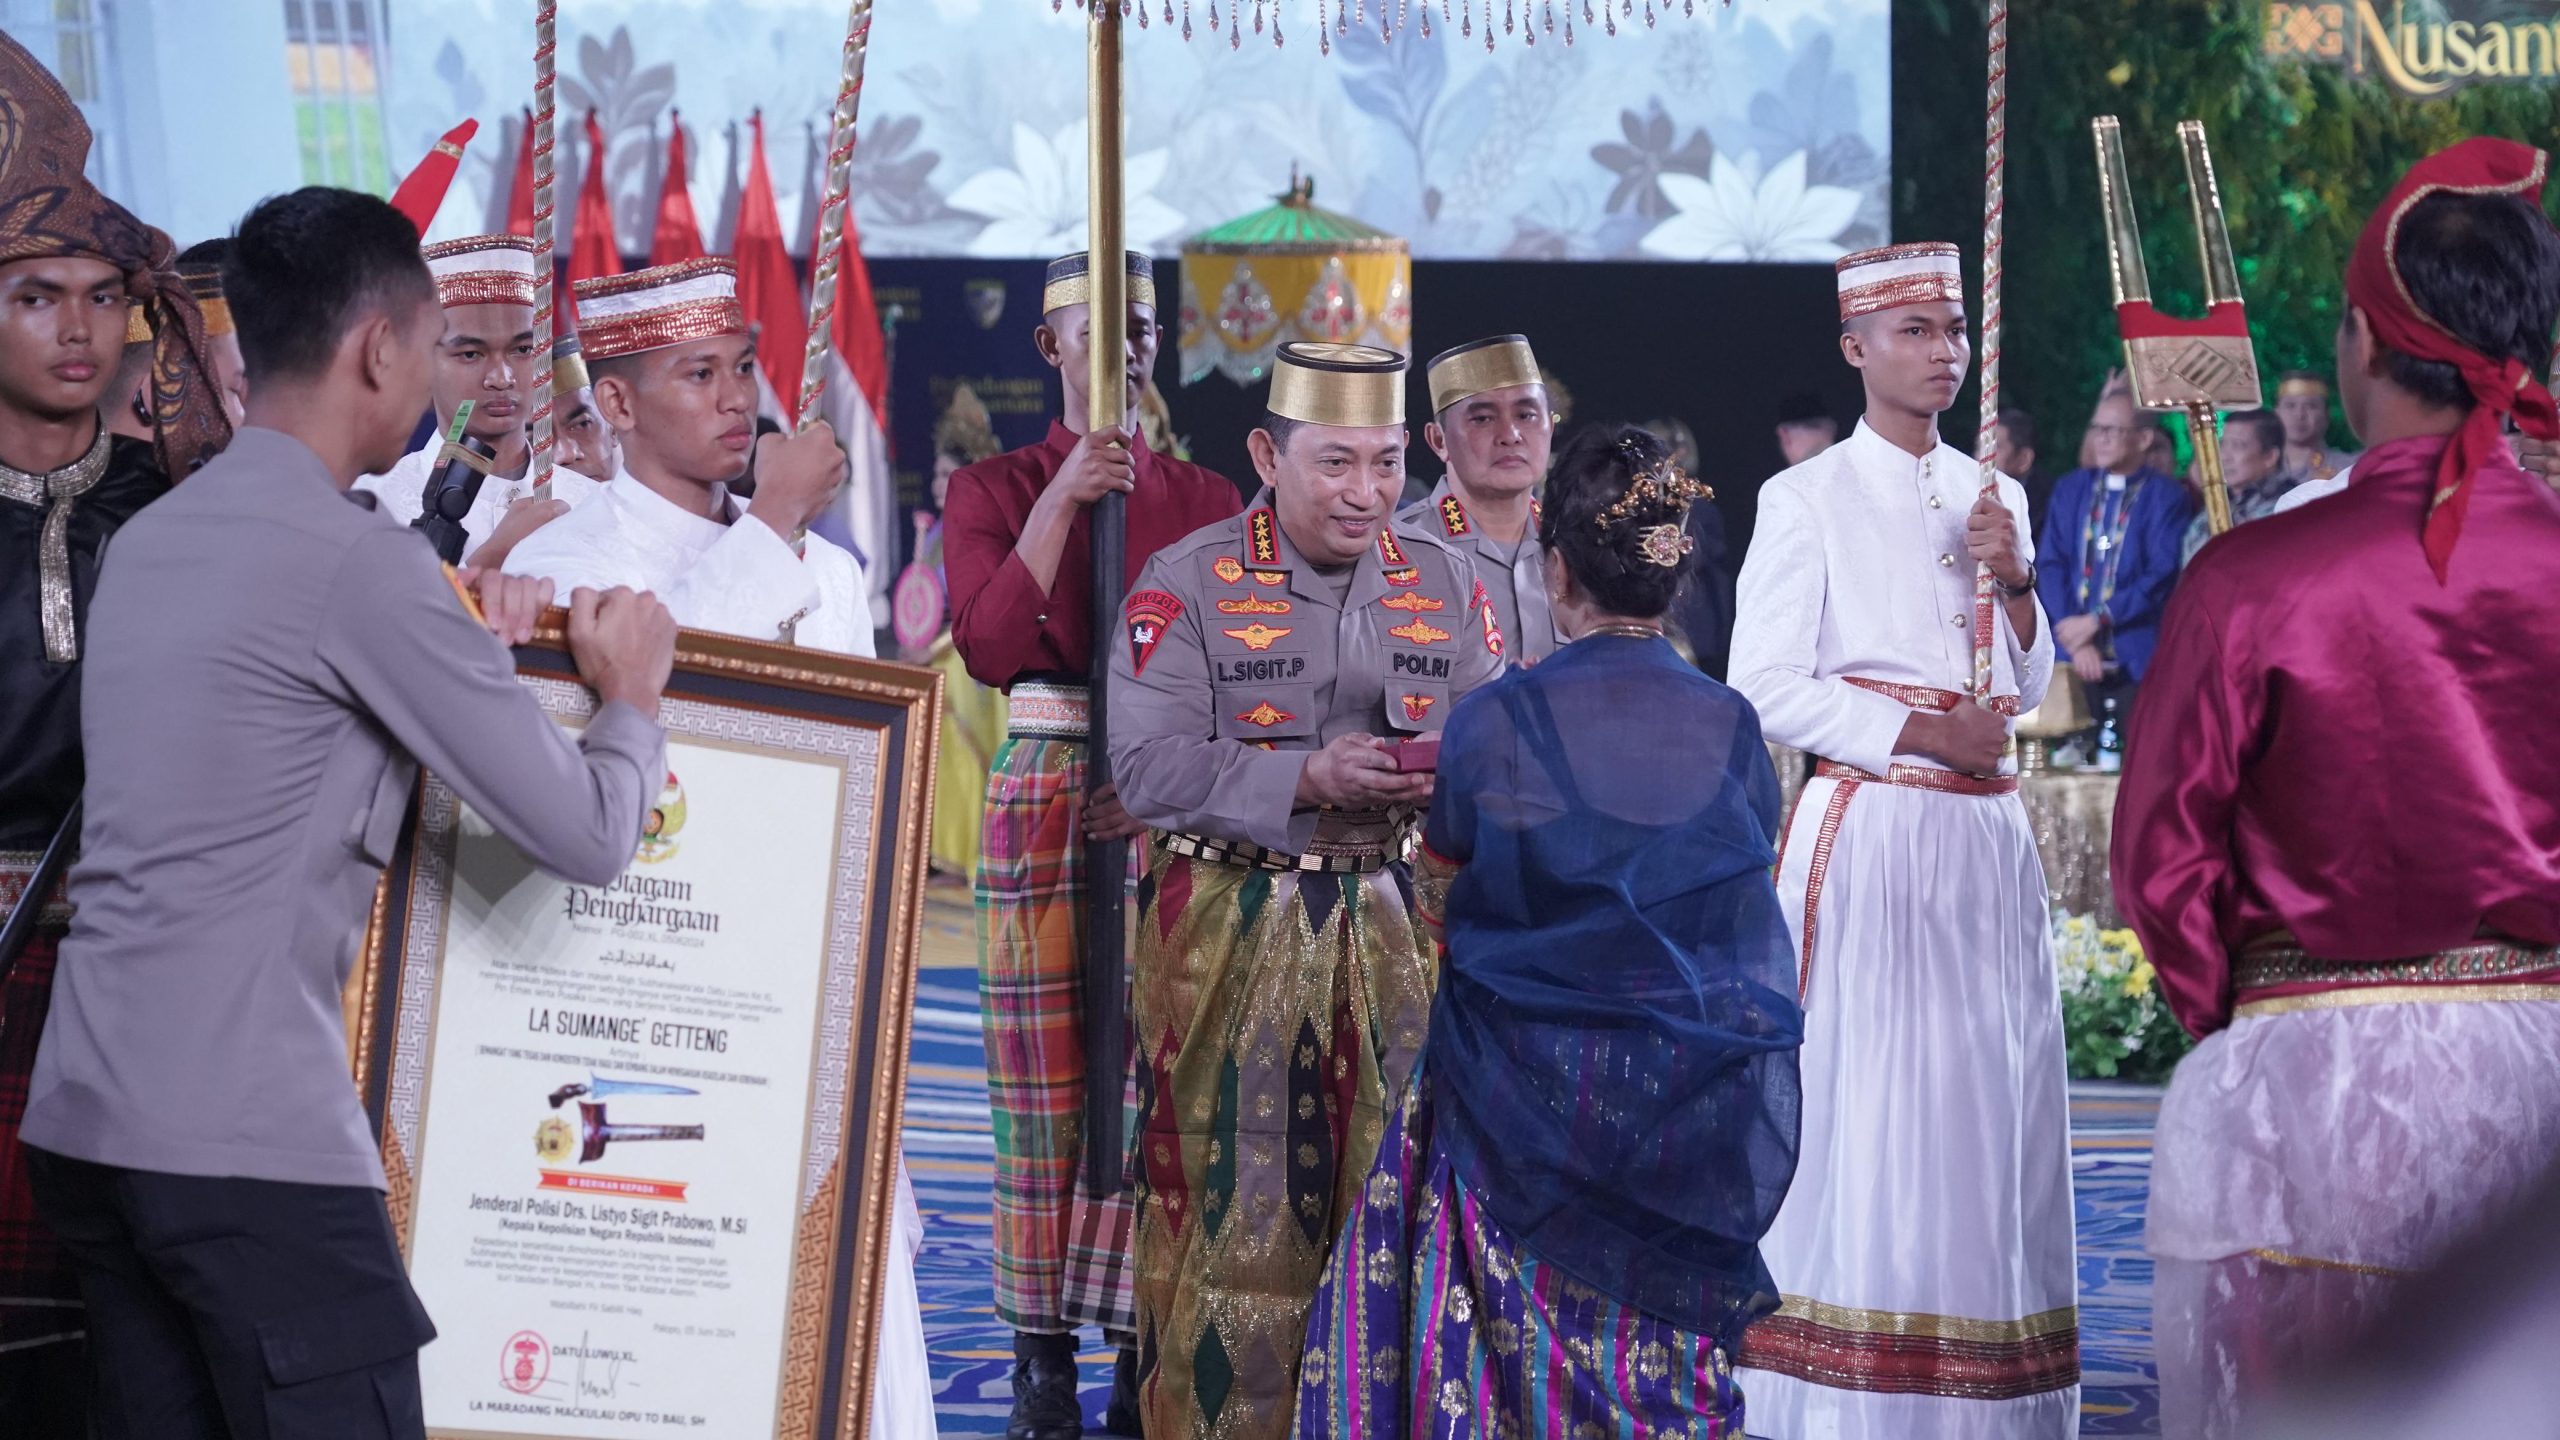 Kapolri Dianugerahi Gelar Adat-Pusaka oleh Dewan Adat dan Kerajaan di Sulawesi Selatan